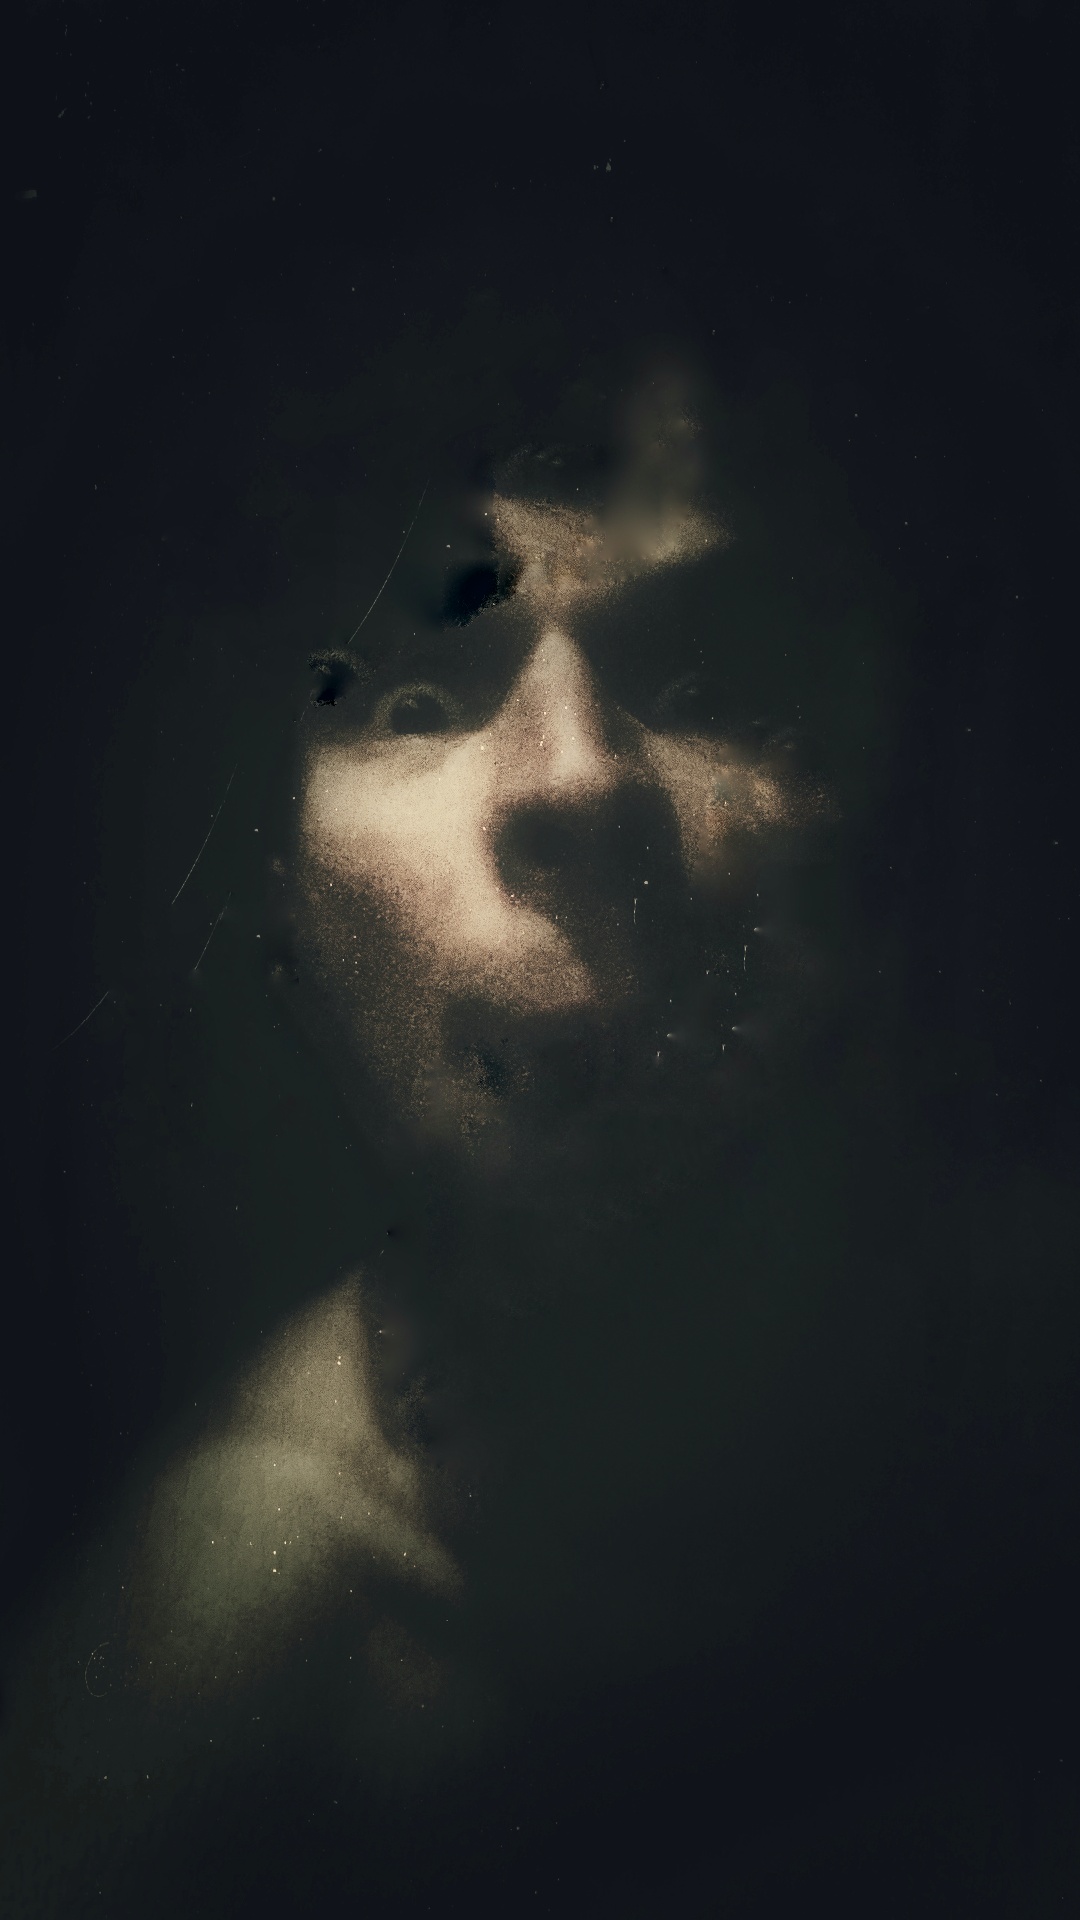 Martin Geisler Soulfies Selflie Selbstportrait Bizarr Grotesk Abbild Seele Emotion Mensch Abbild Augenscheinlicht Kunst Fotografie